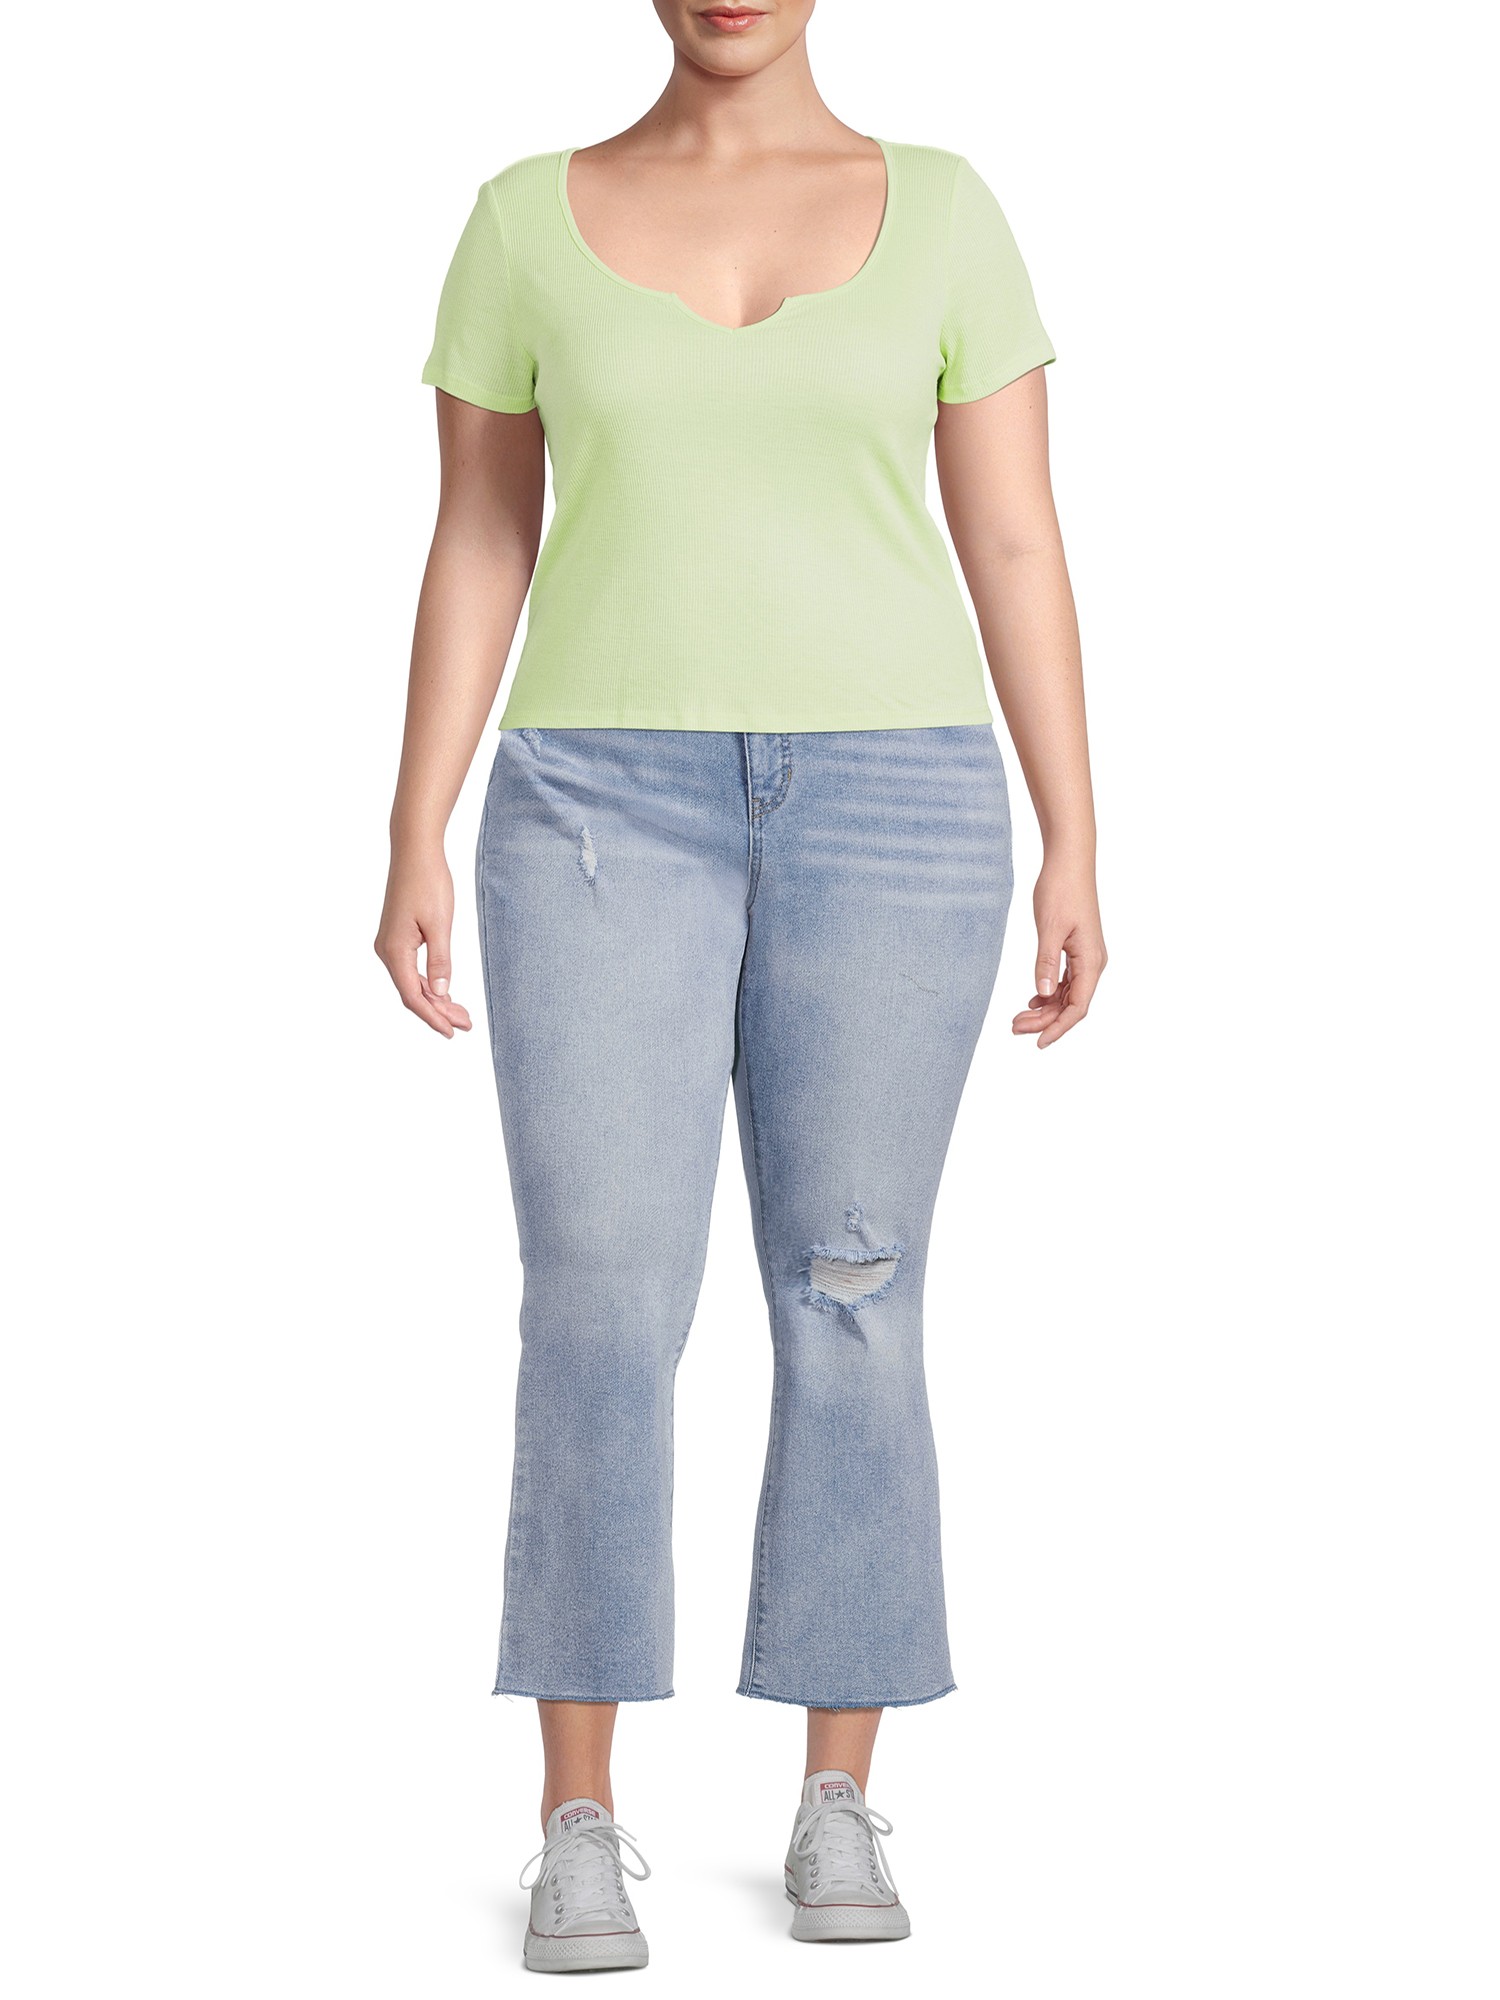 Terra & Sky Women's Plus Size Chop Pocket Straight Leg Jeans, 29” Inseam 